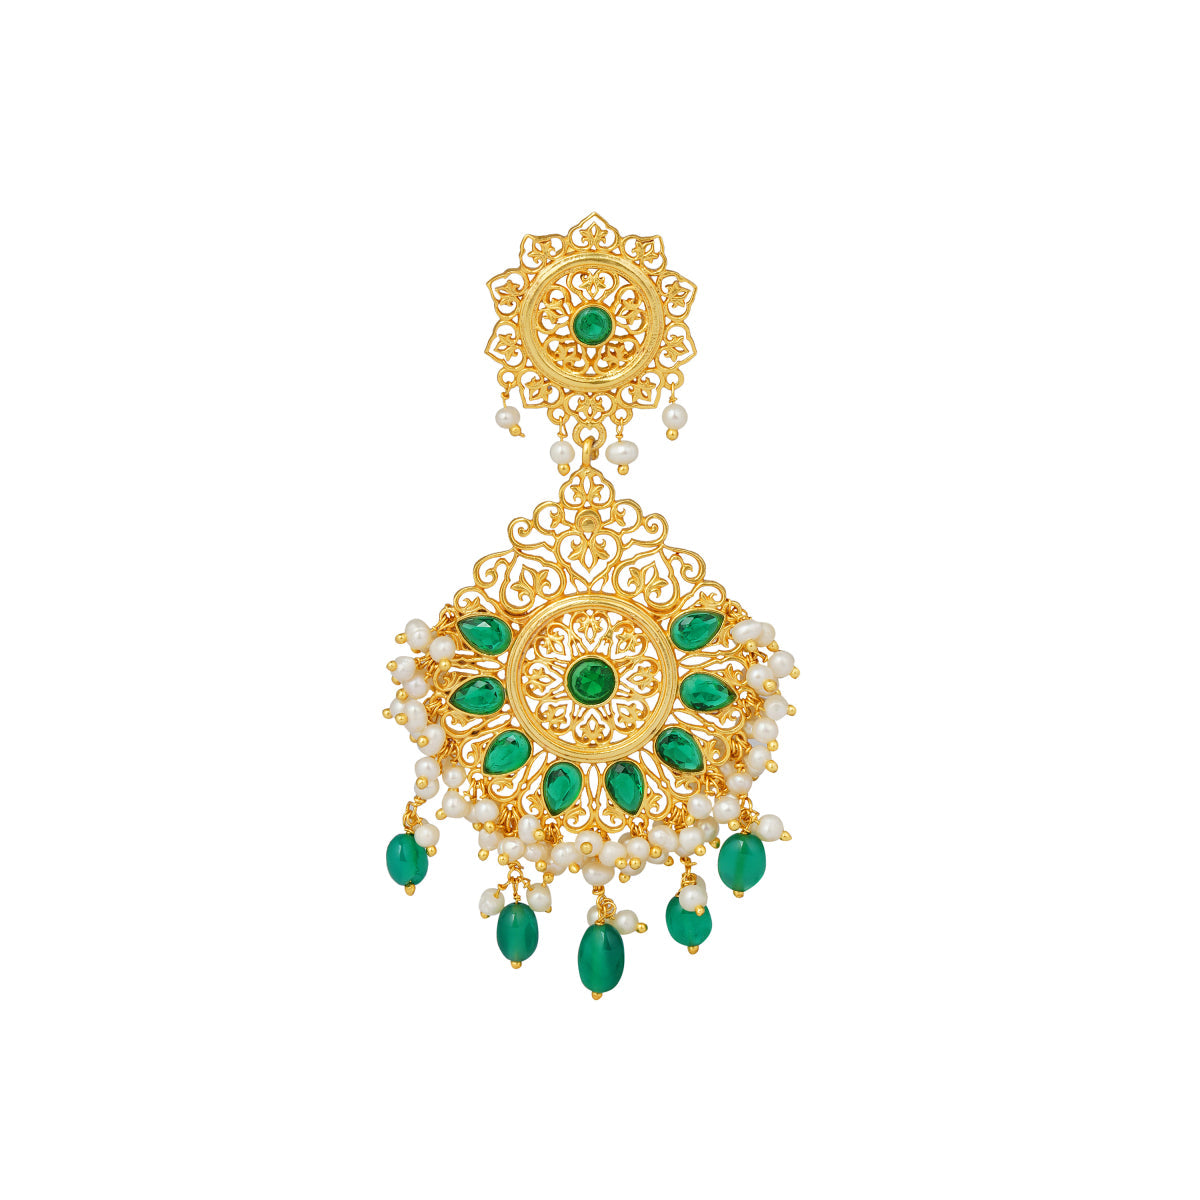 Gul-e-bahar earrings